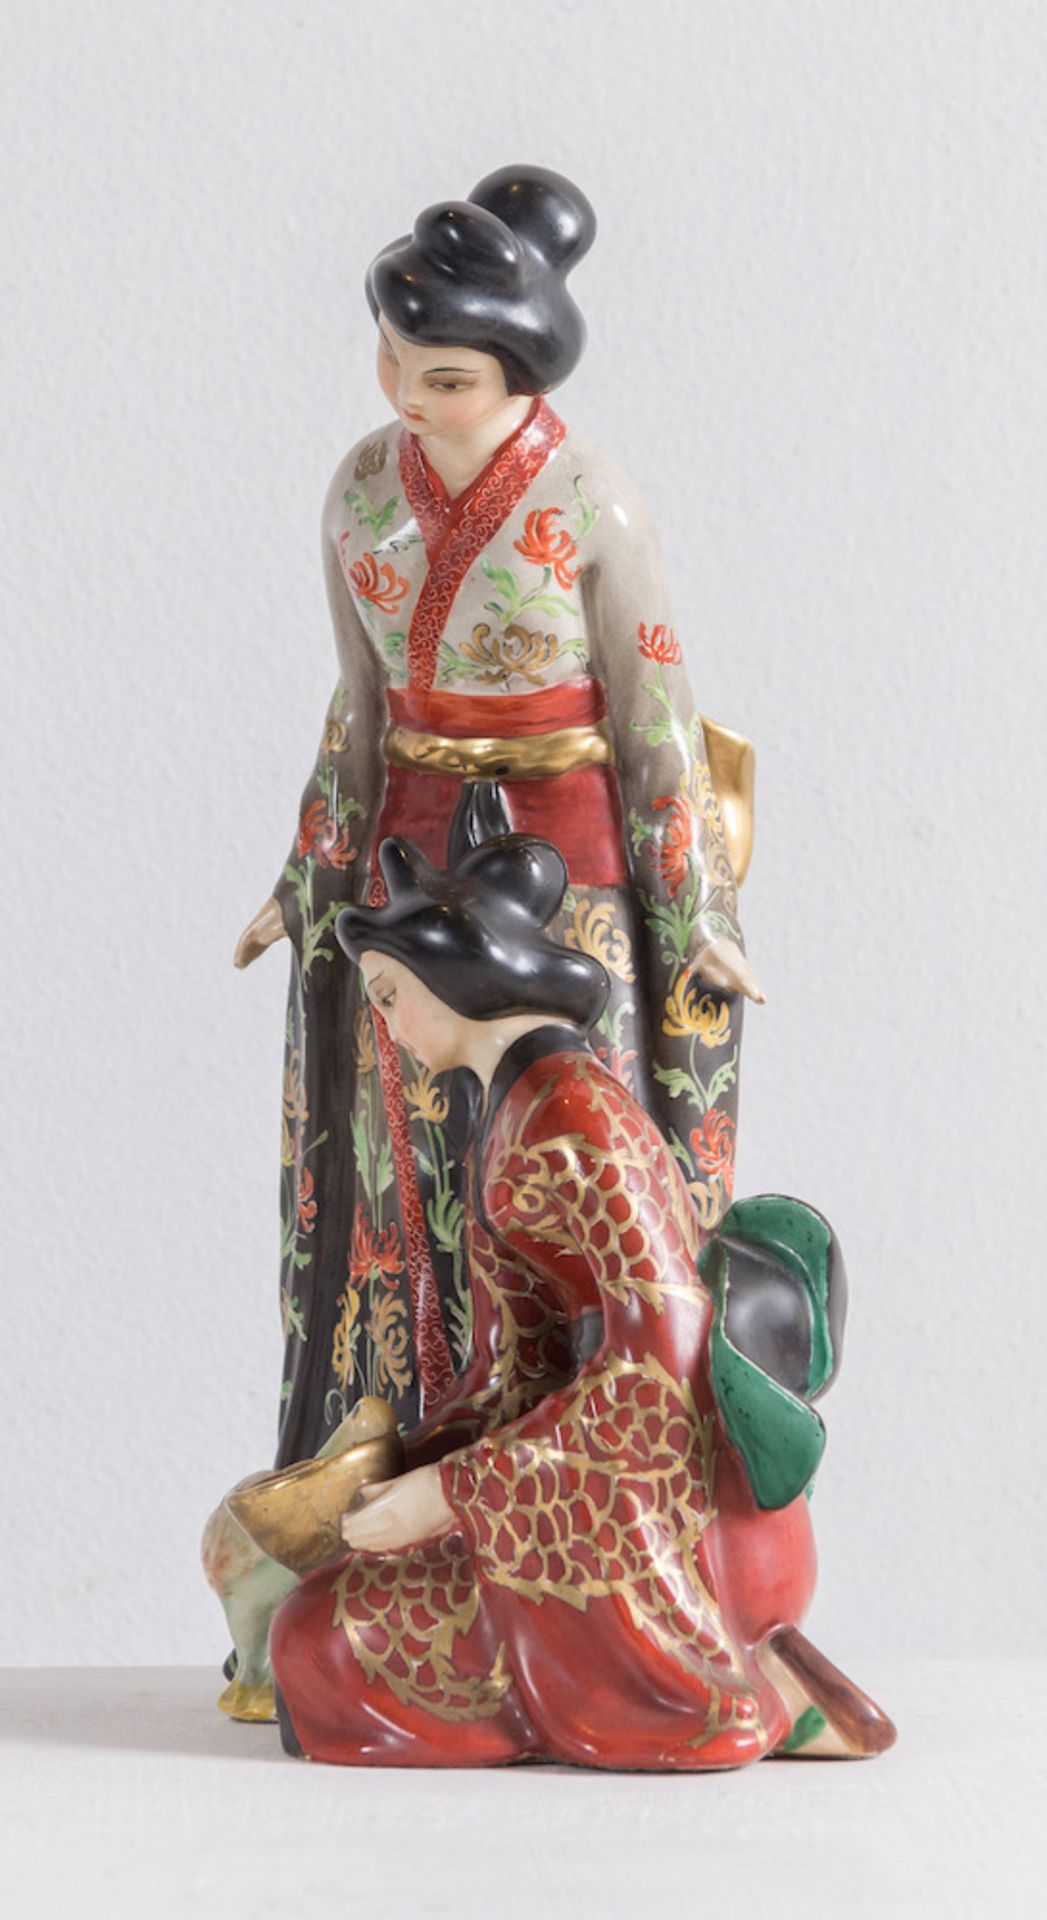 GUIDO CACCIAPUOTI, XX secolo. "Geishe". Scultura in ceramica smaltata. Cm 30x16x13,5. Sotto la base  - Bild 2 aus 4